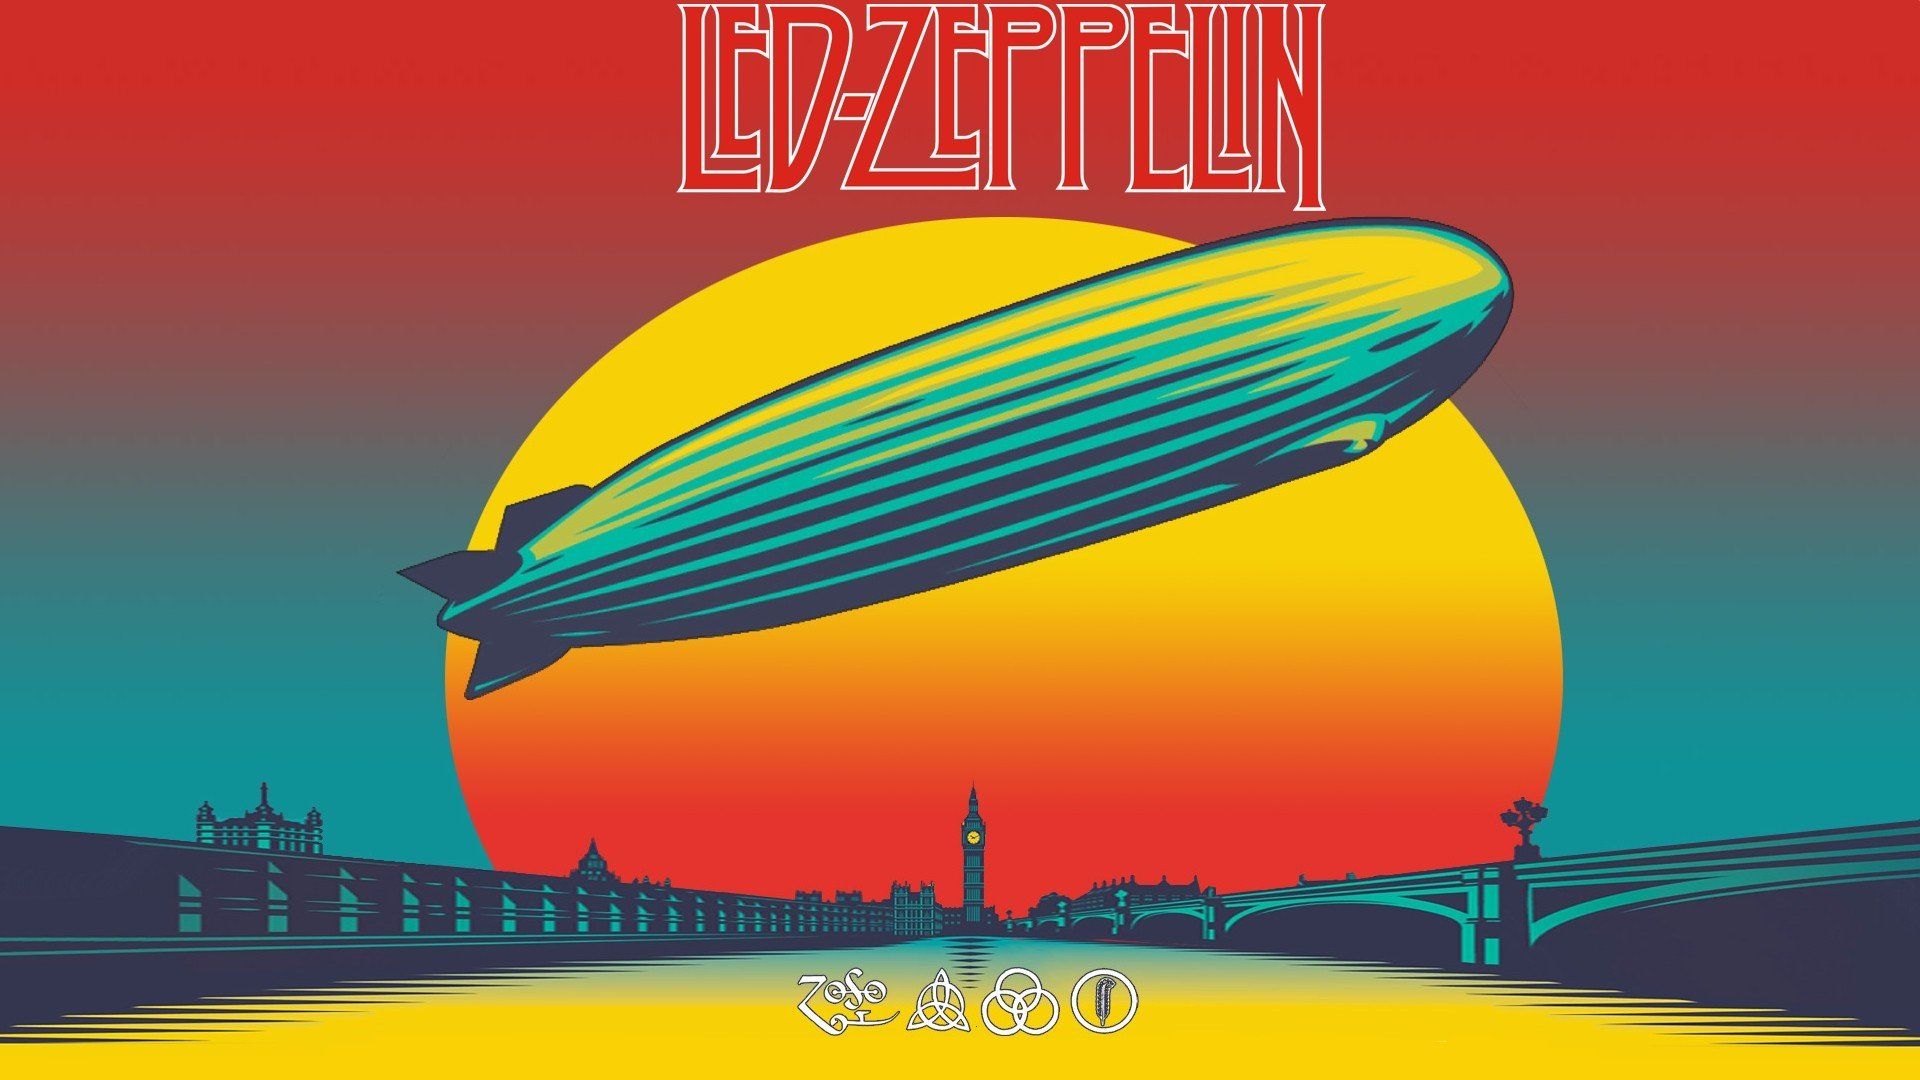 1920x1080 music album covers led zeppelin wallpaper JPG 197 kB